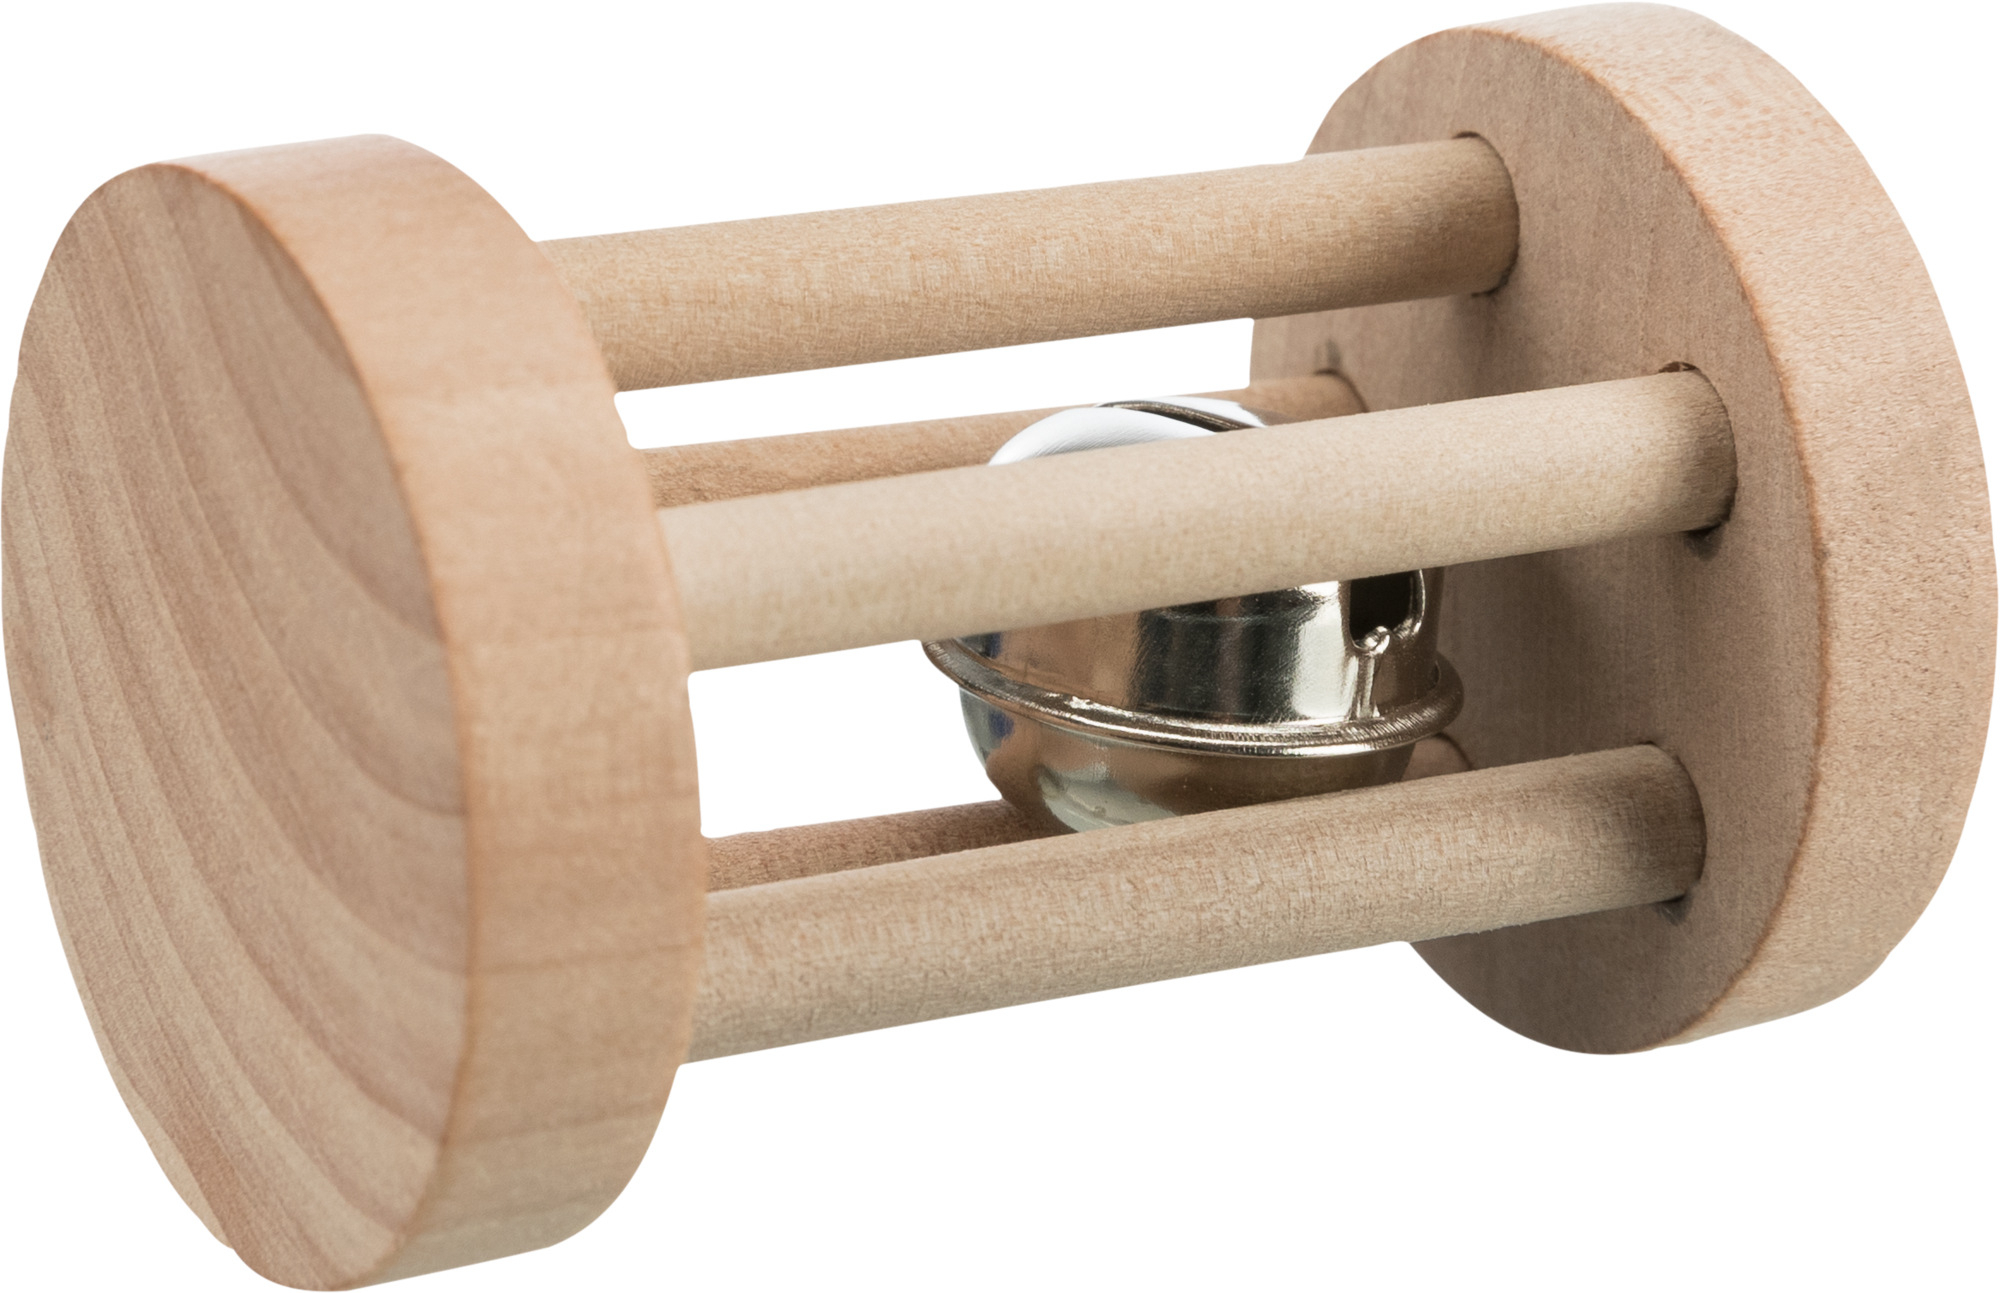 Rouleau de jeu avec clochette en bois pour chat